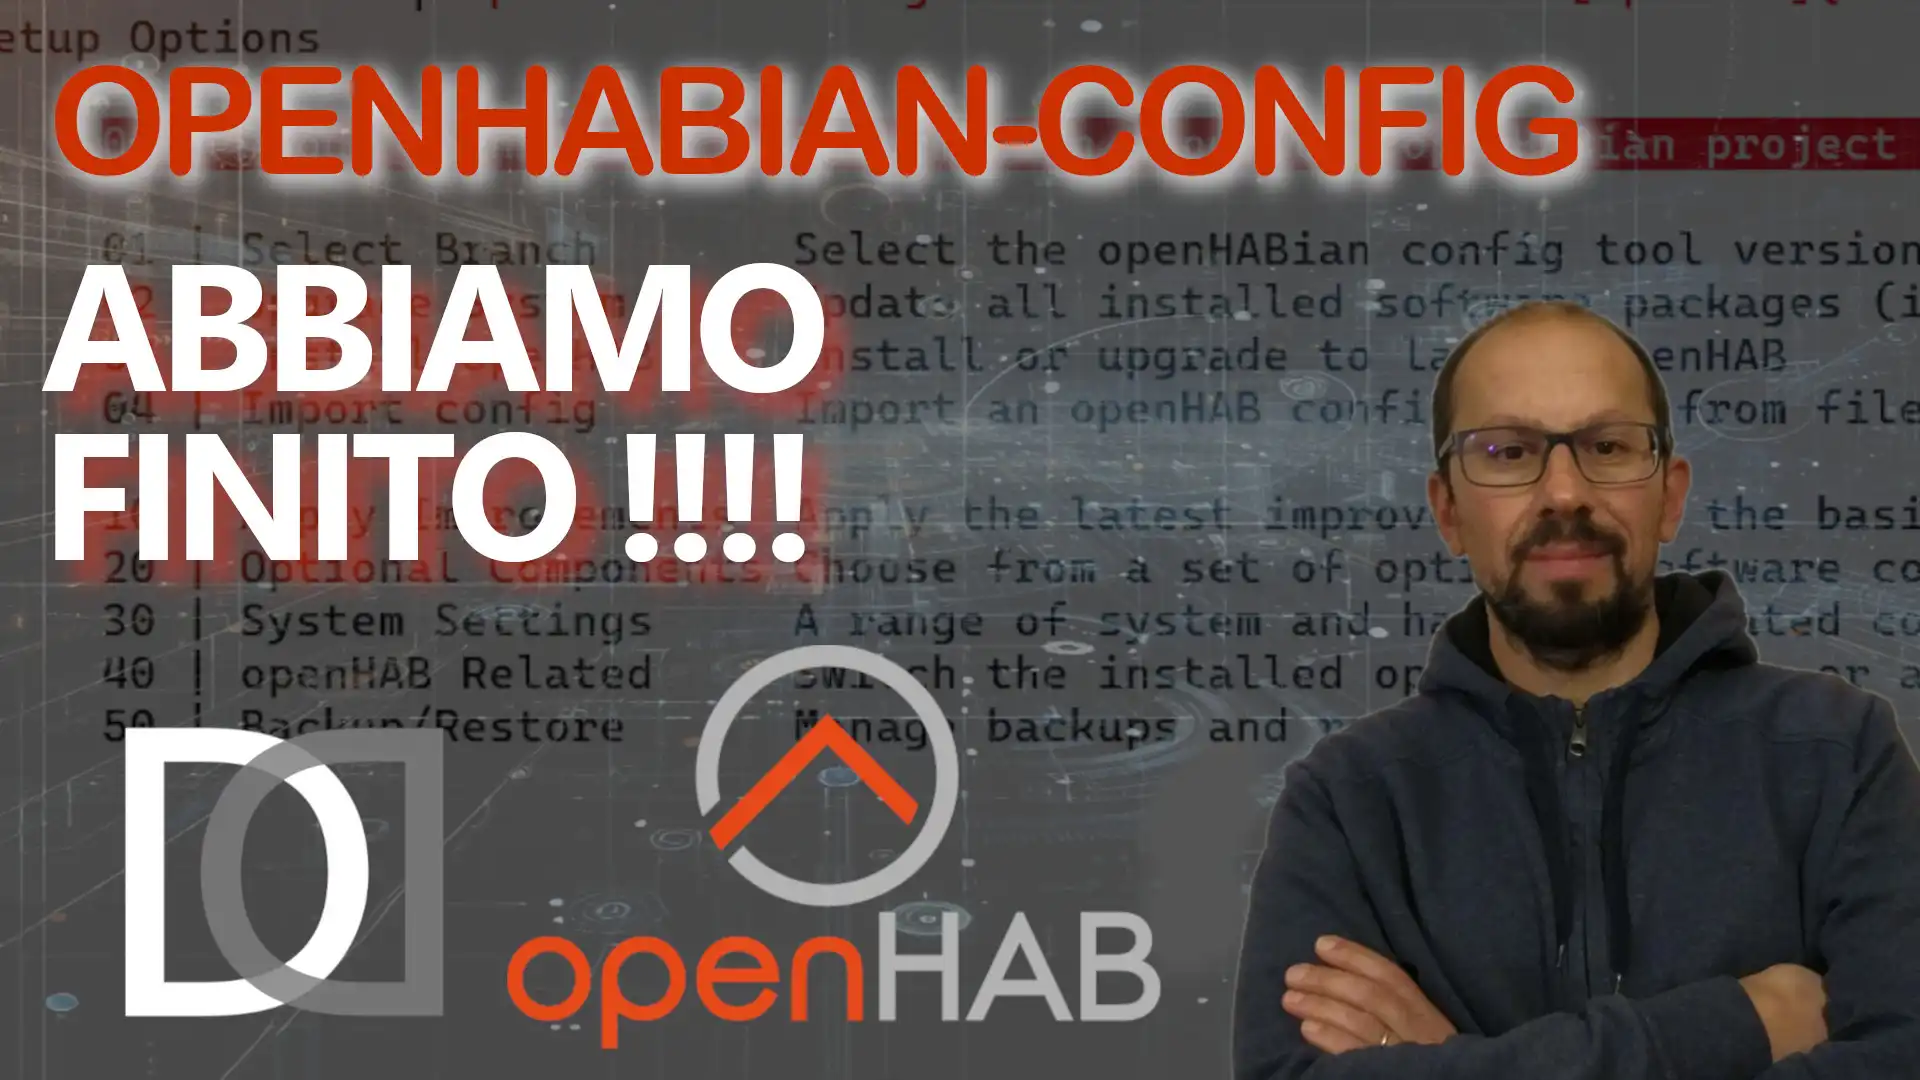 OPENHAB in PILLOLE - 8. OpenHABian - Completo la configurazione iniziale - VIDEO